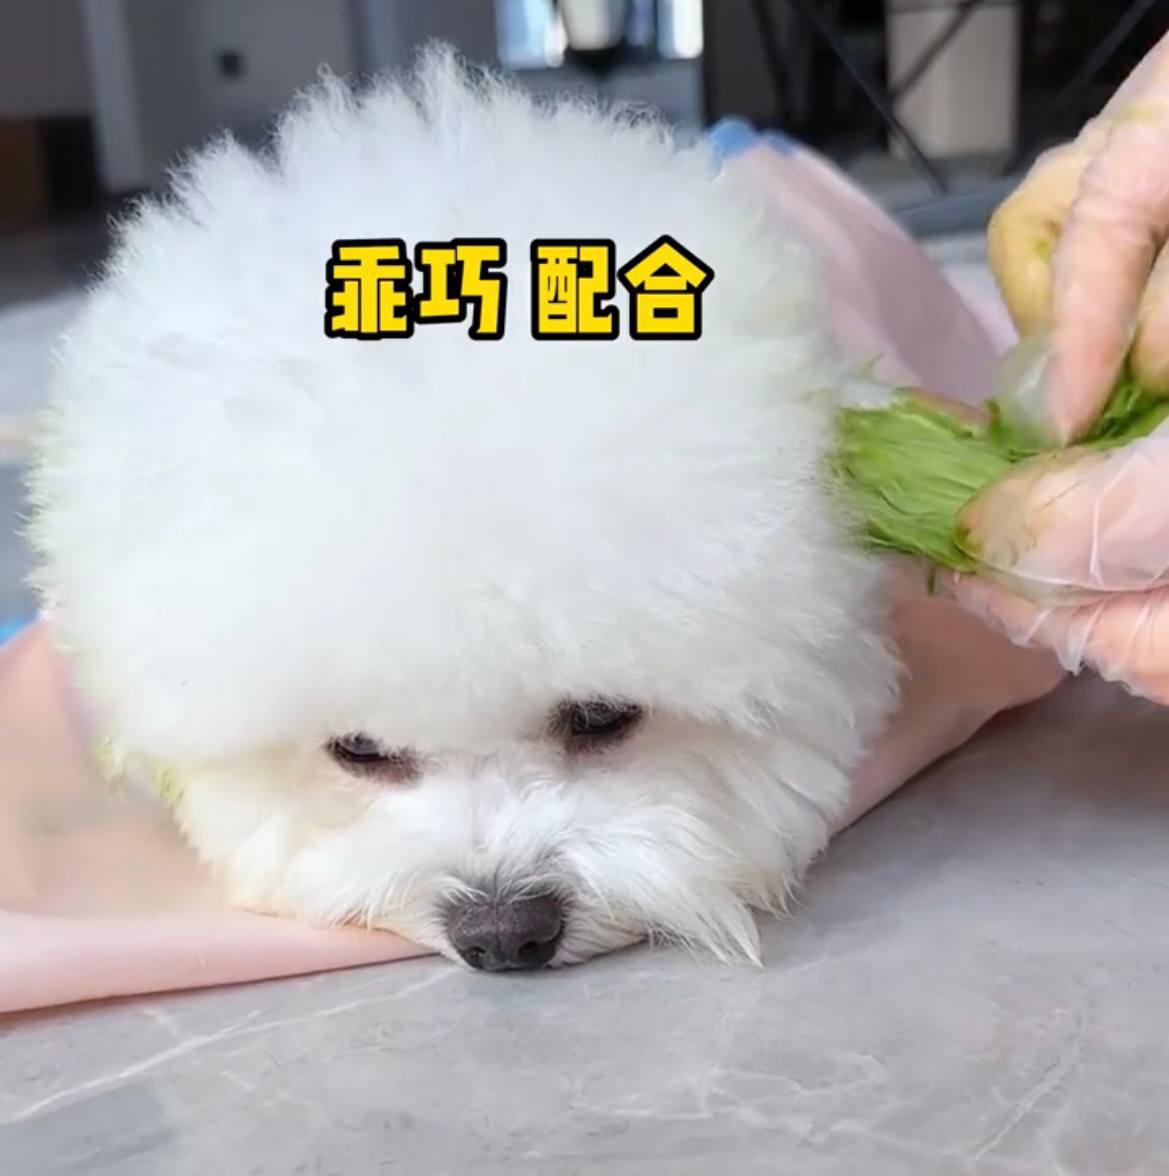 Странная тенденция китайских нетизенов окрашивать собак соком фруктов и овощей